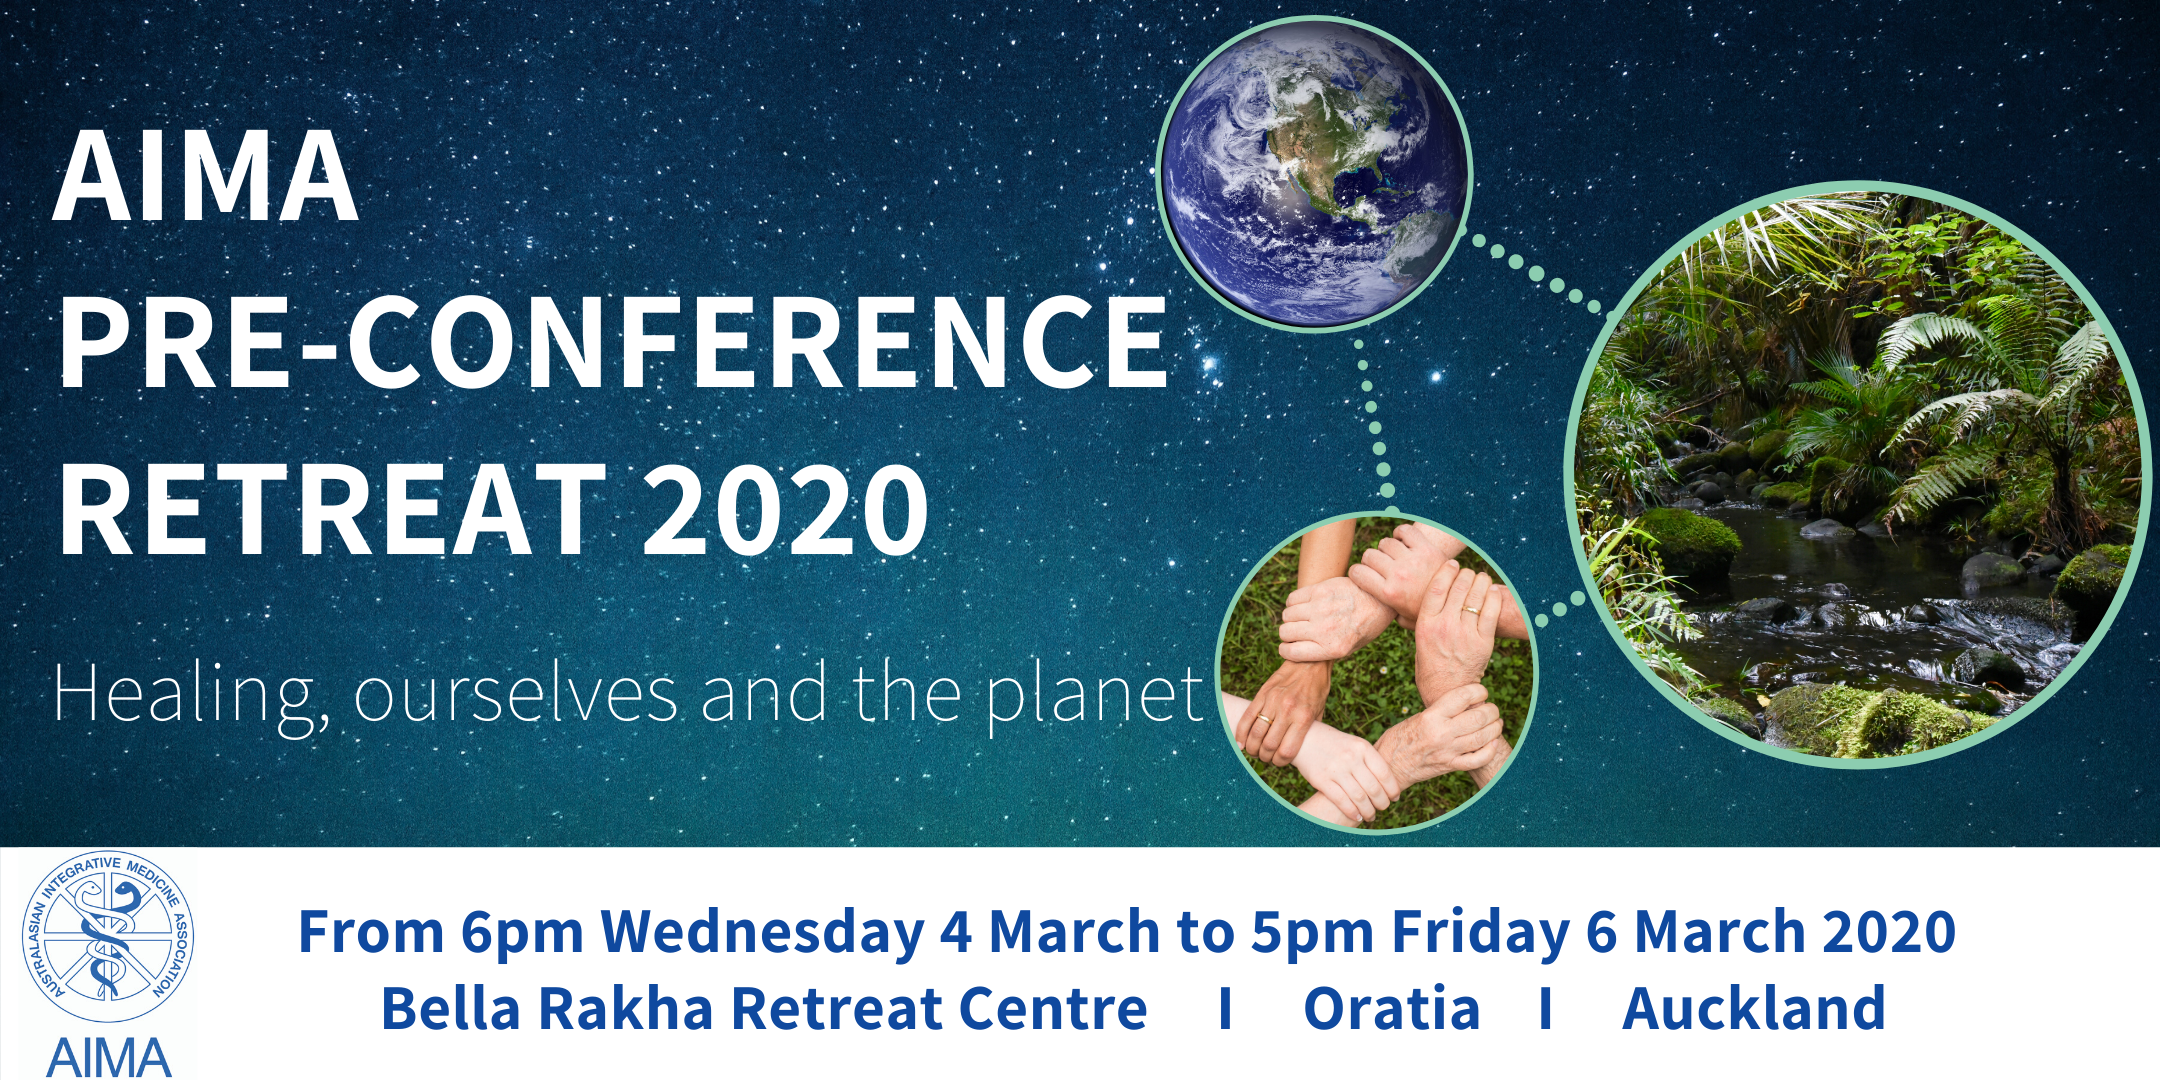 AIMA Pre-Conference Retreat 2020